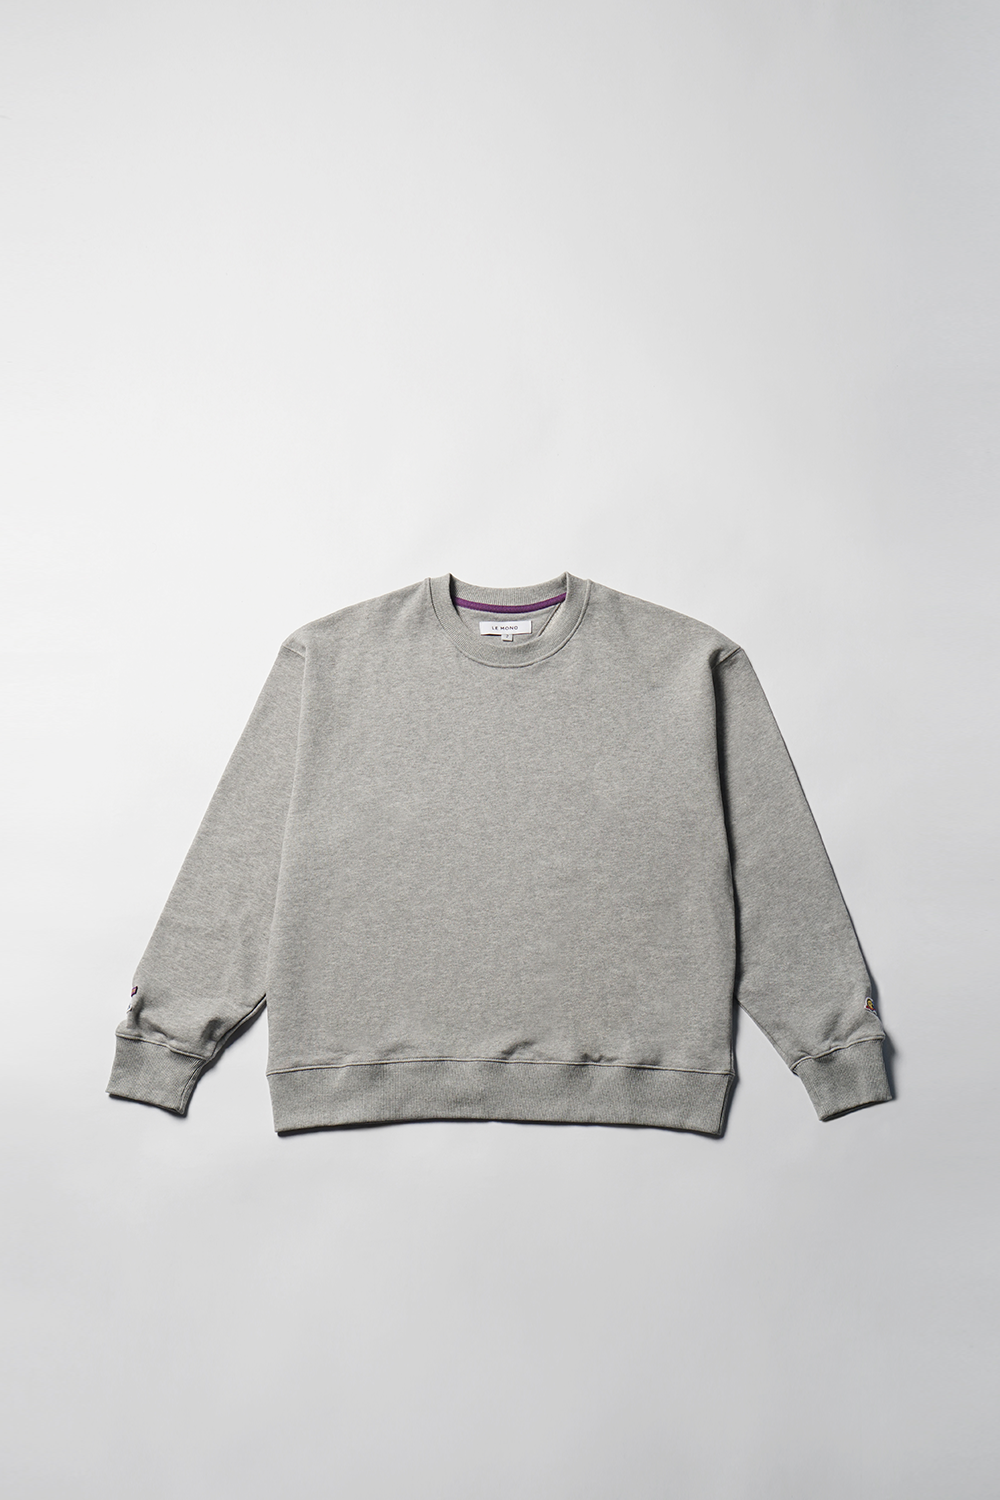 Flats x Lemono Wapen Sweatshirt - Gray